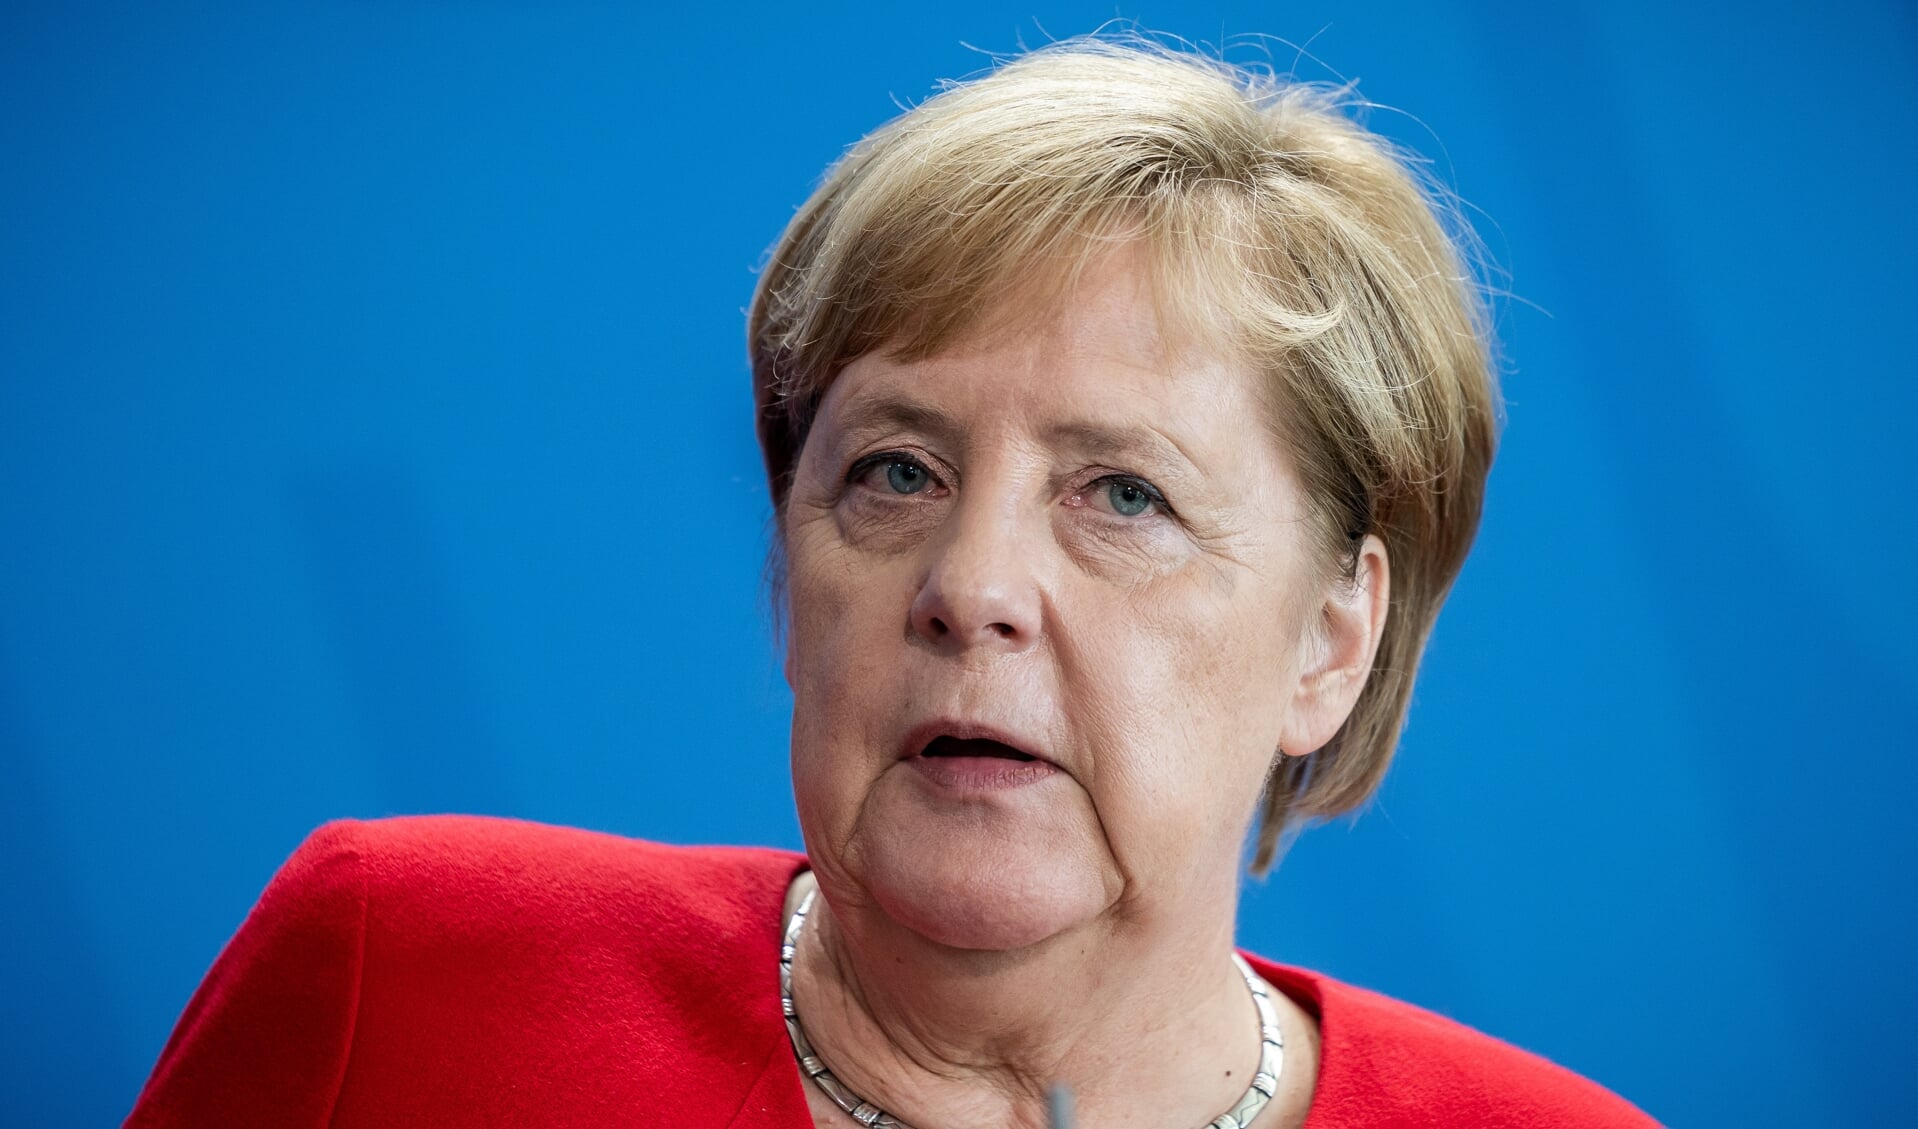 I sin bog vil Angela Merkel reflektere over centrale politiske beslutninger og gøre dem forståelige for en bredere offentlighed, 